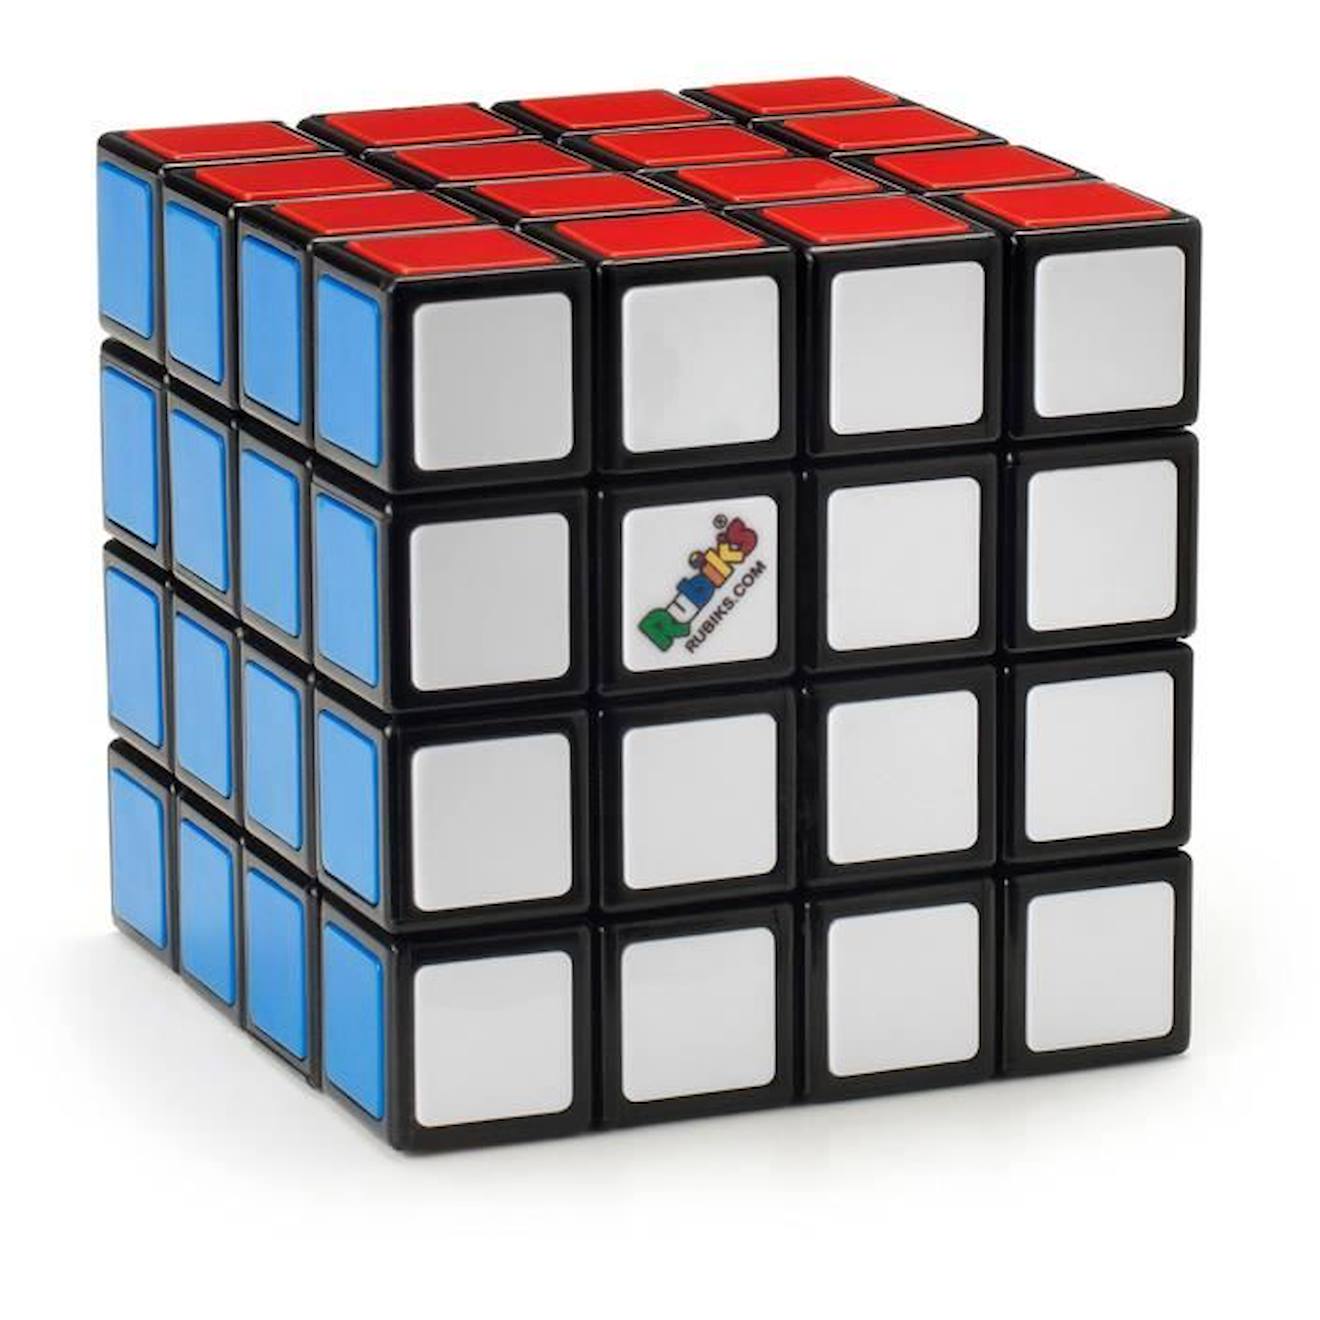 Jeu casse-tête Rubik's Cube 4x4 - RUBIK'S - Multicolore - Pour enfant de 8  ans et plus bleu - Rubik's